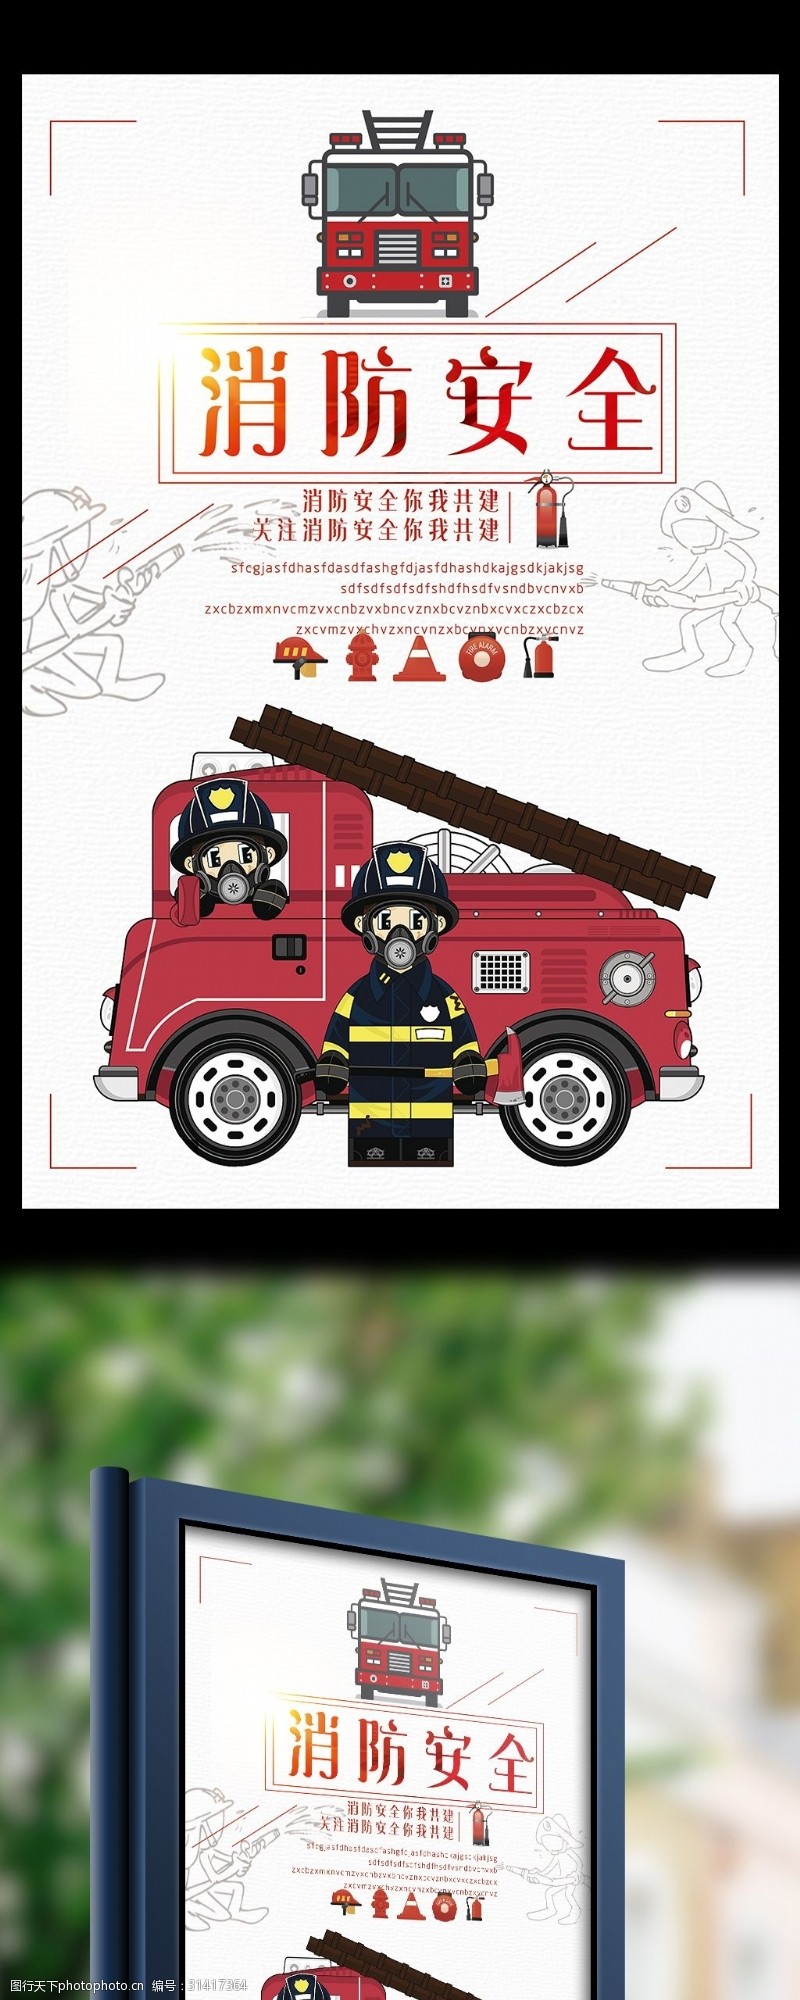 消防文化口号消防安全你我共建公益宣传海报